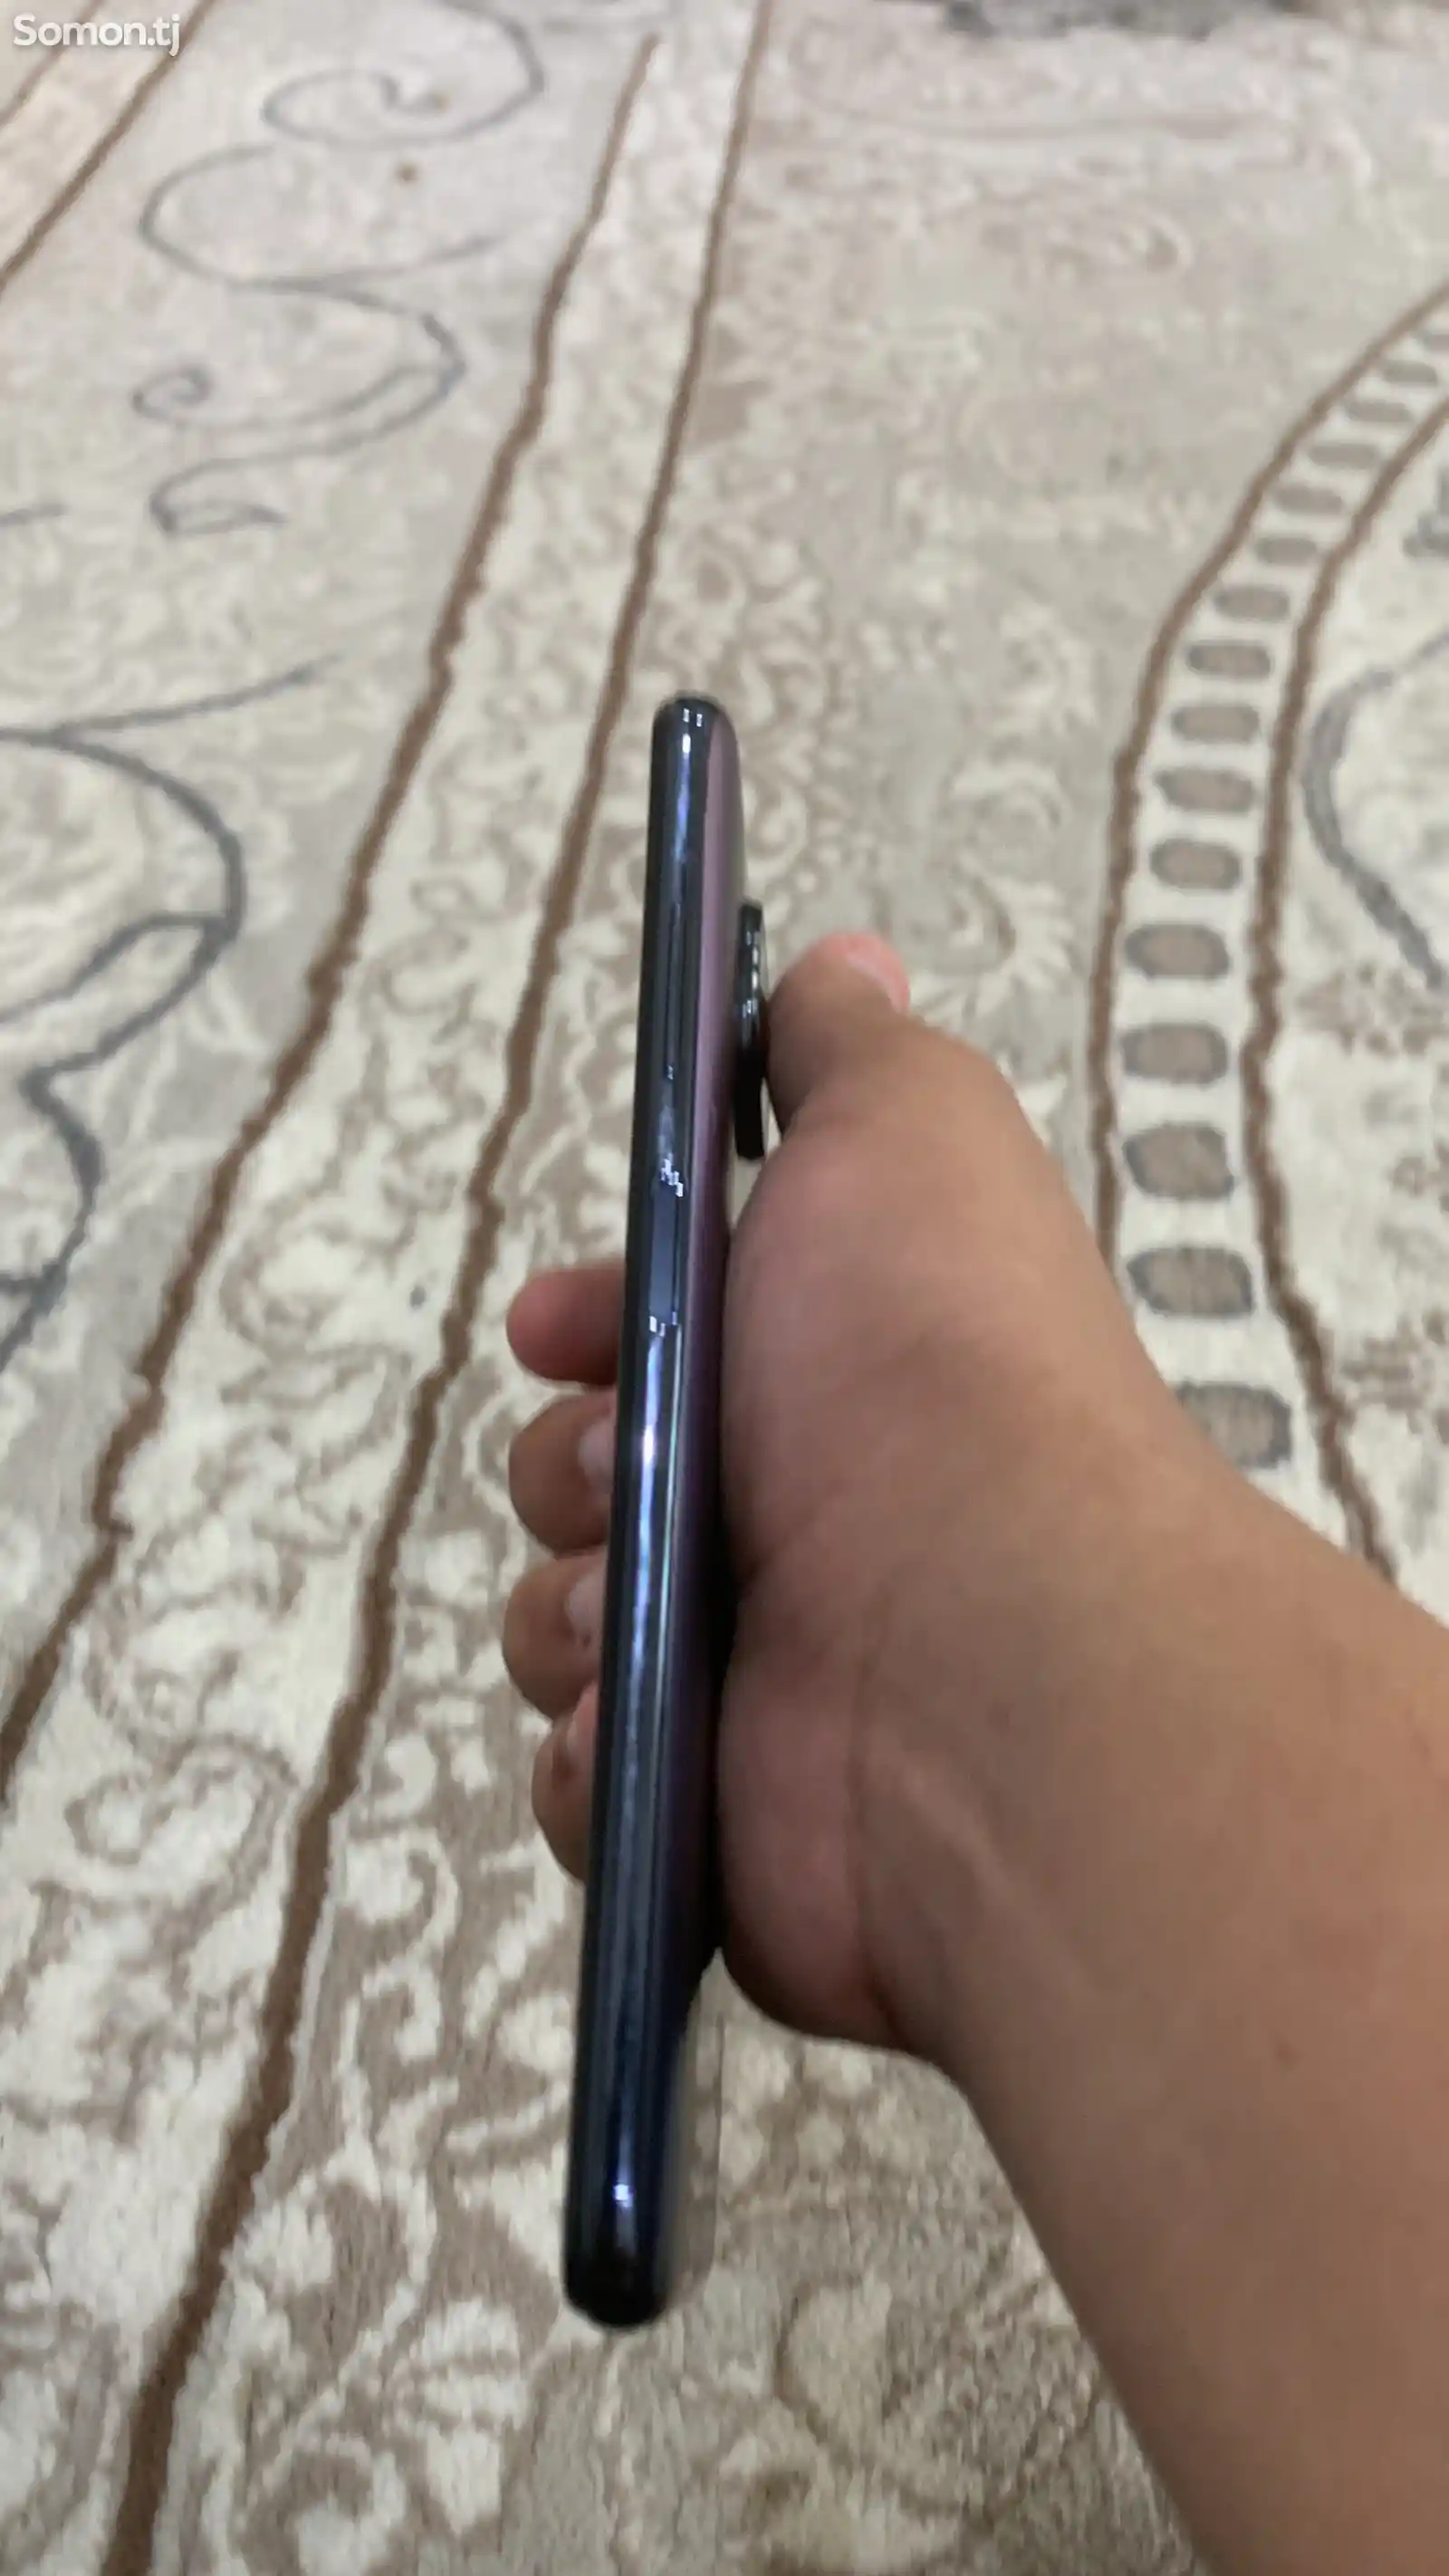 Xiaomi Poco X3 Pro-4